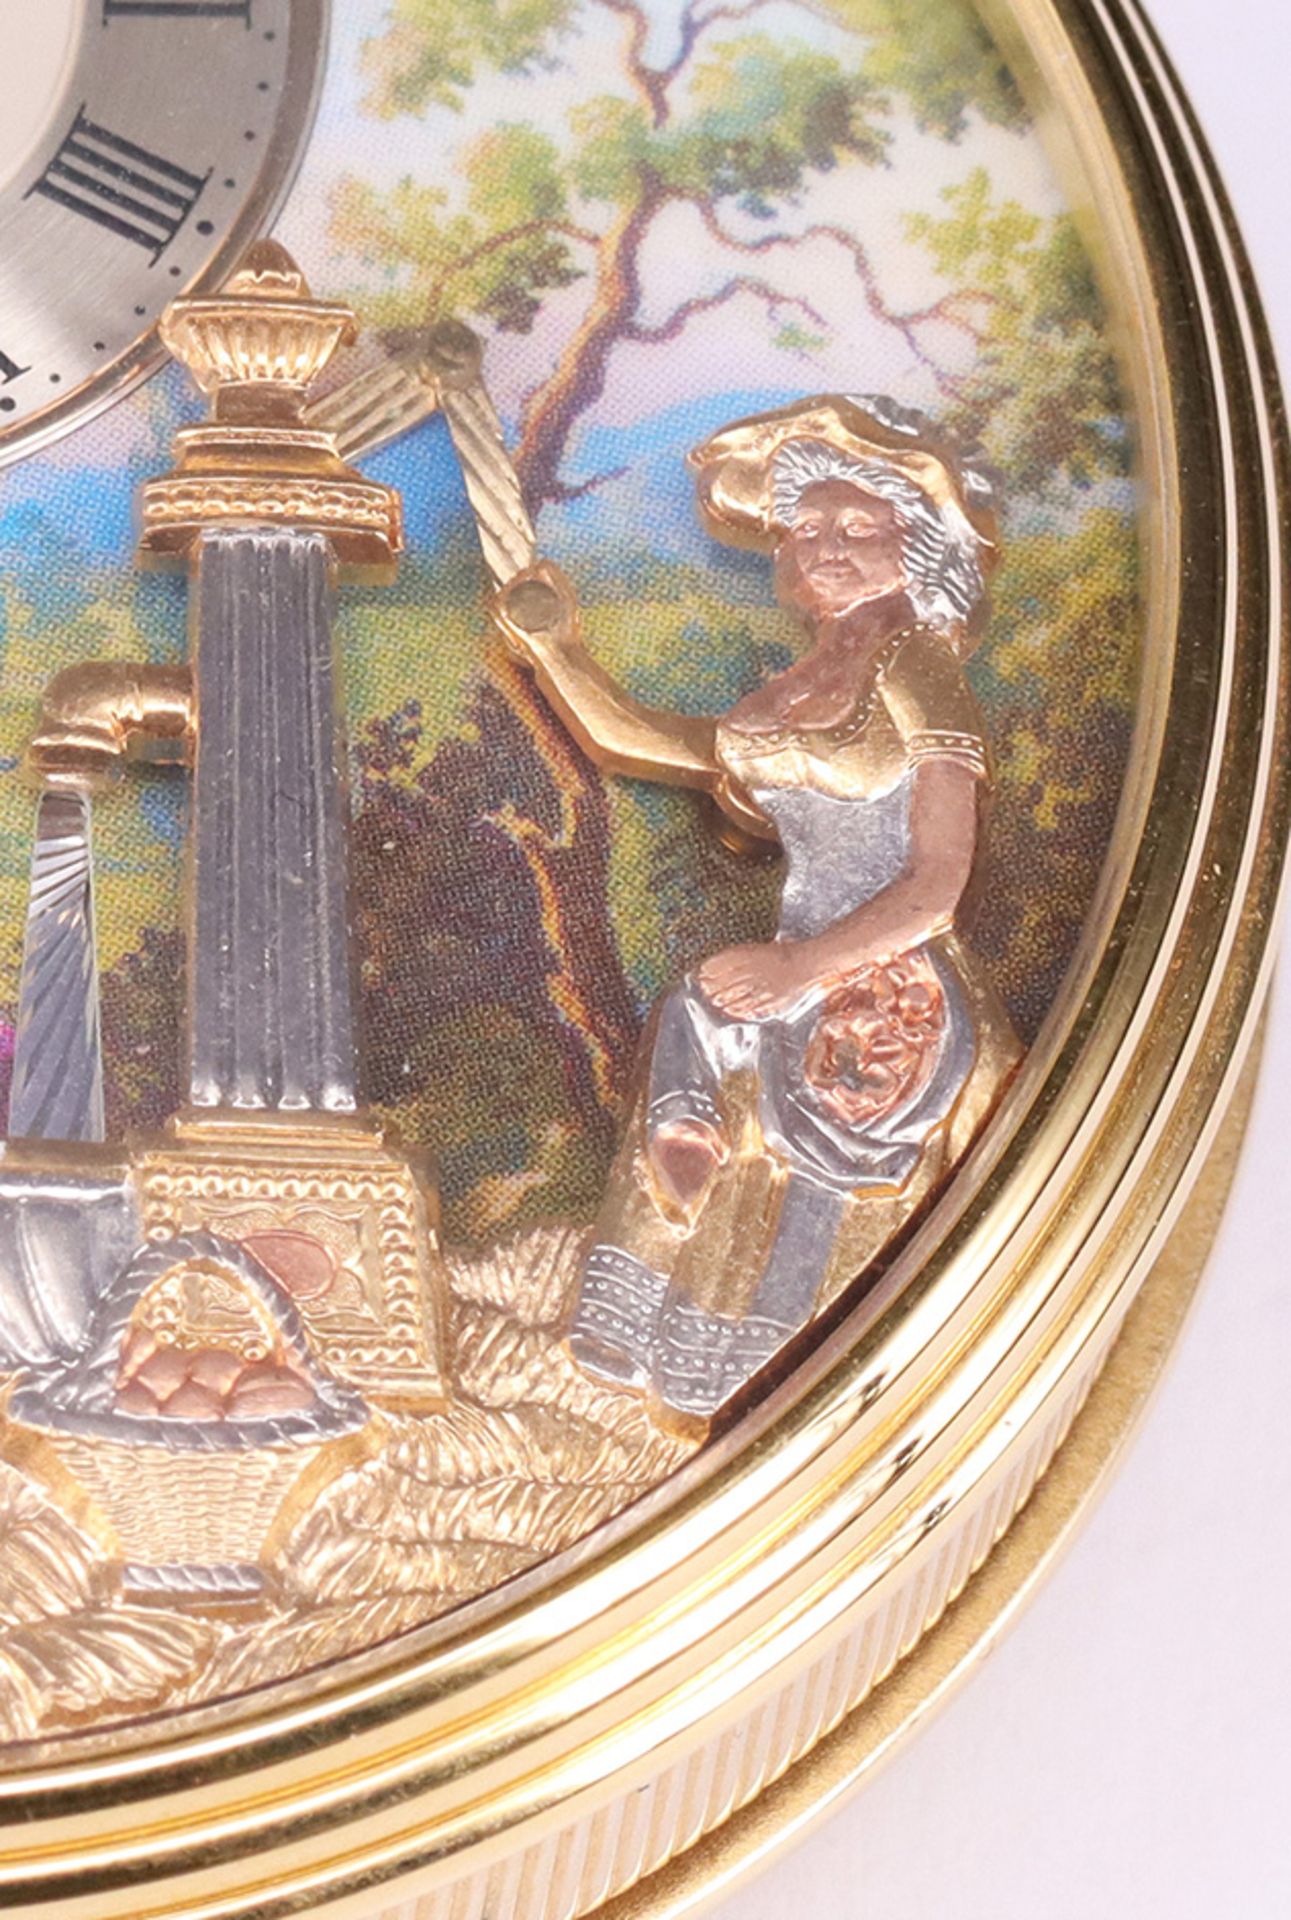 3 Taschenuhren, Reuge und Kelek: 2 TU Charles Reuge (Schweiz) Sainte Croix, Goldplated, mit Spieluhr - Bild 5 aus 15